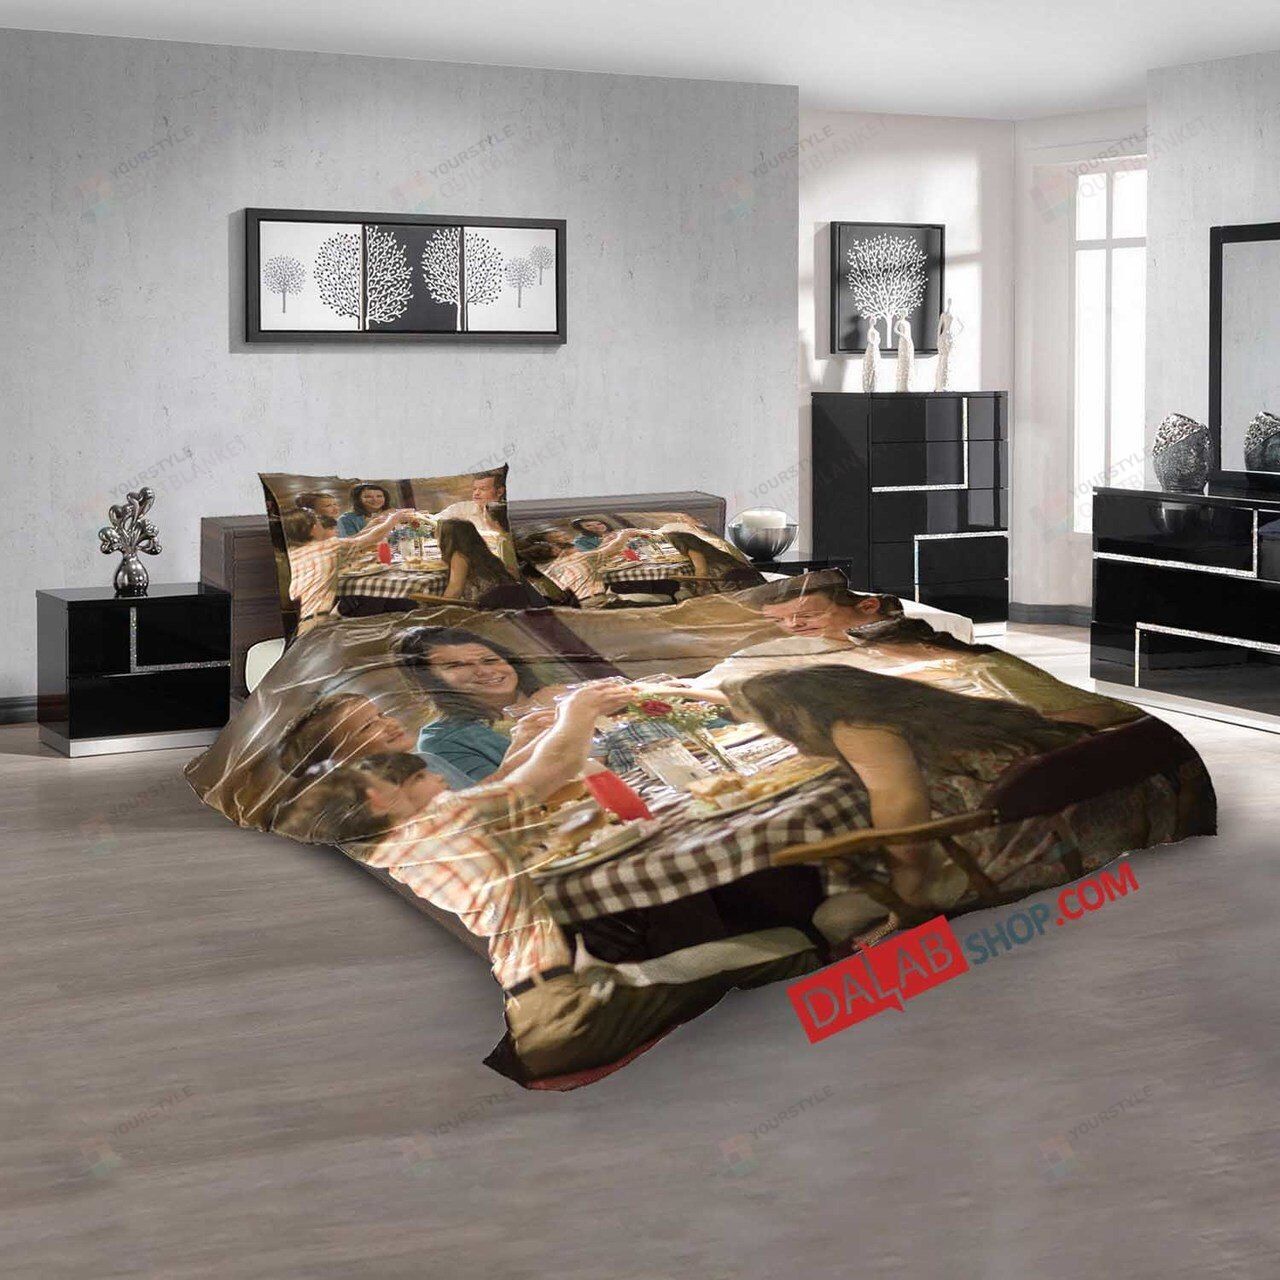 Movie Flash Of Genius V 3d Duvet Cover Bedroom Sets Bedding Sets